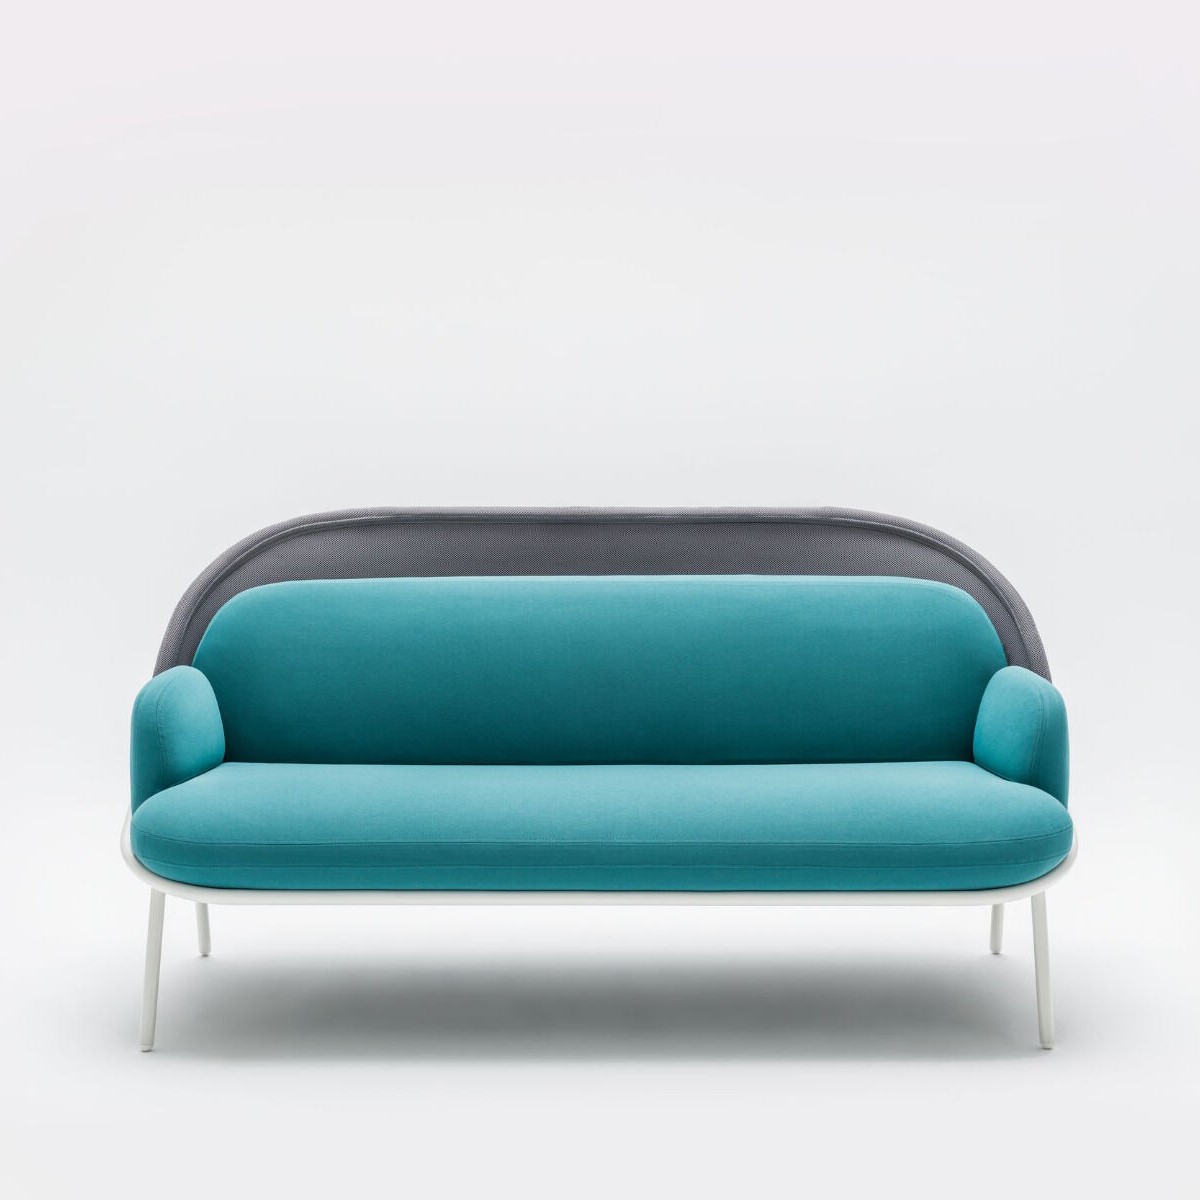 Mesh sofa 2